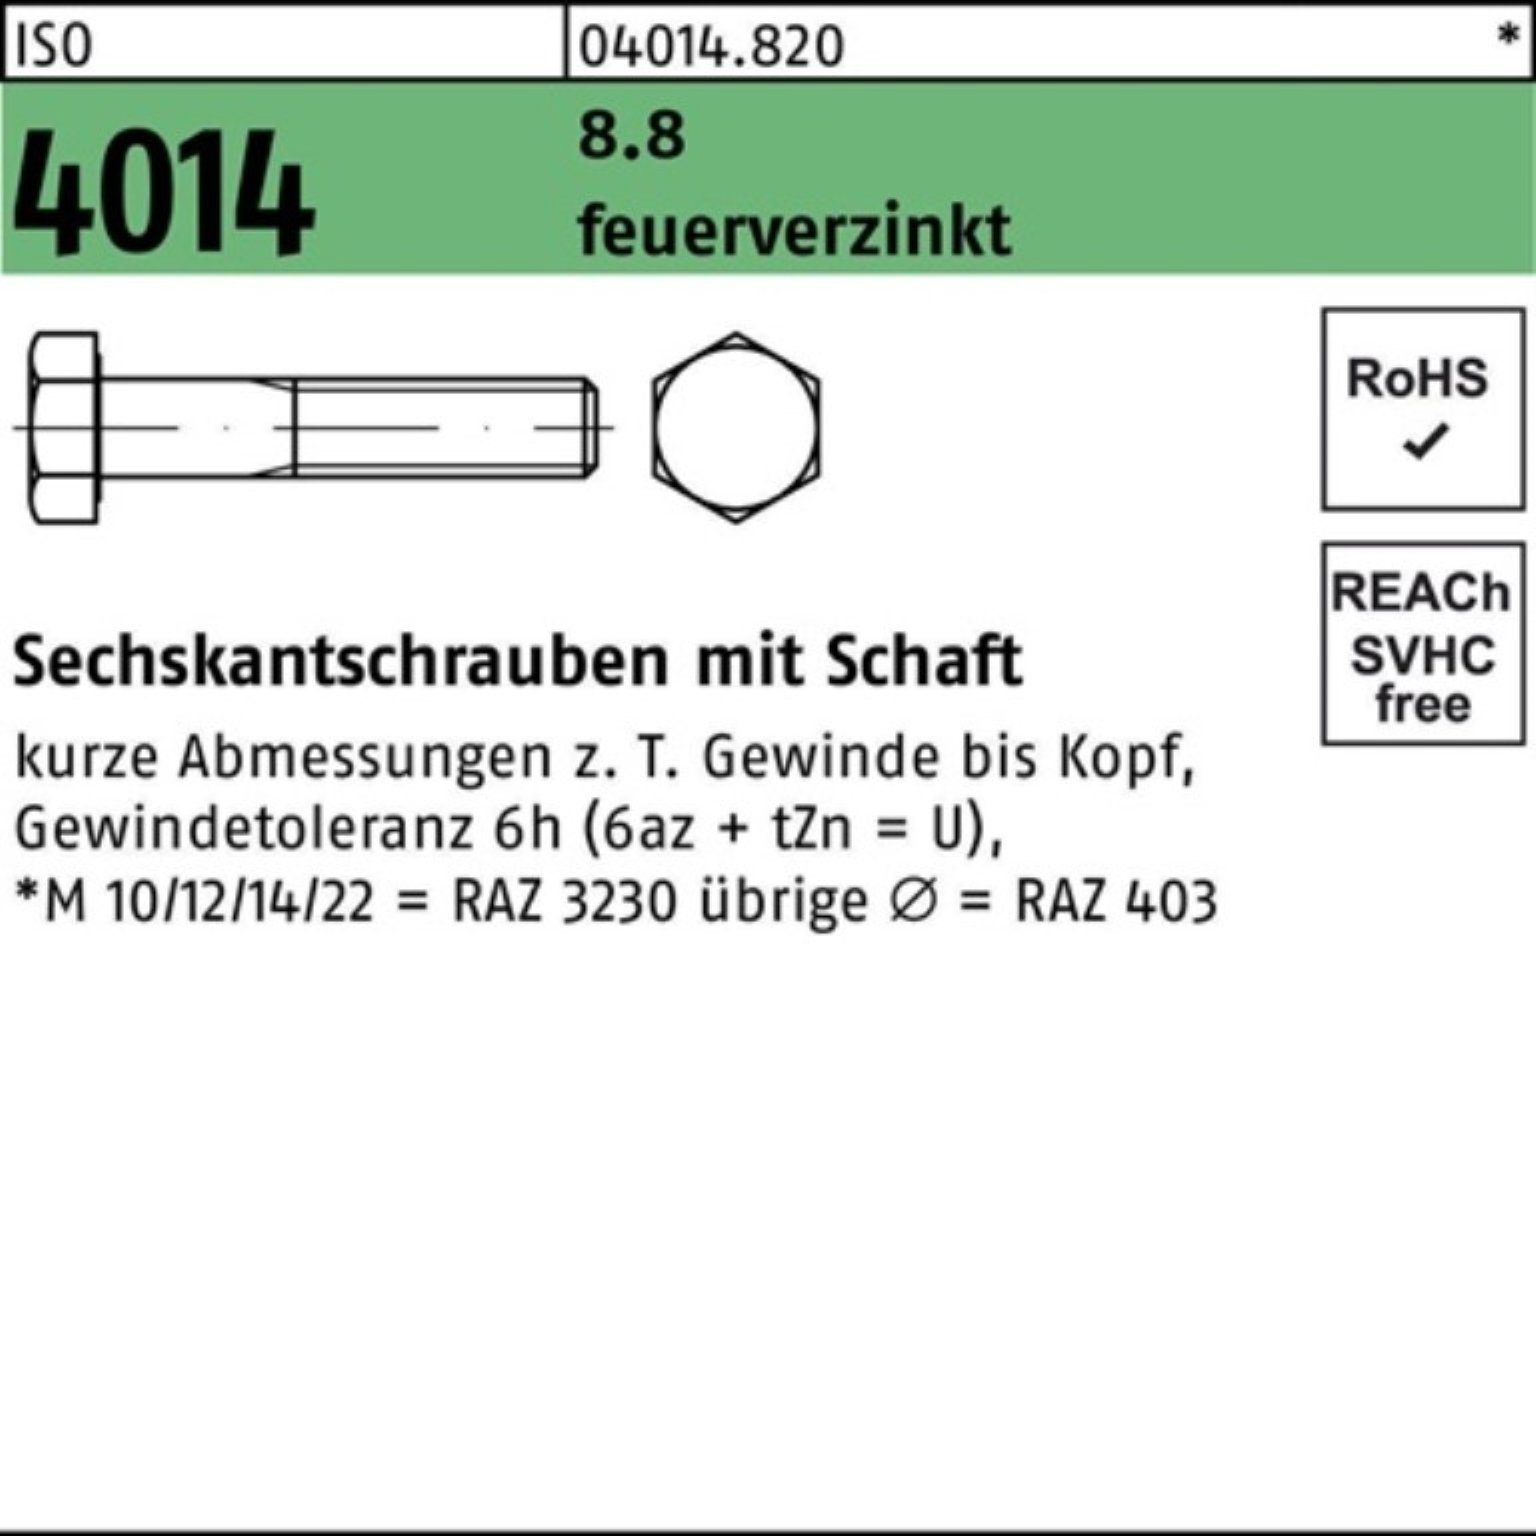 Bufab Sechskantschraube 100er Pack Sechskantschraube ISO 4014 Schaft M20x 80 8.8 feuerverz. 25